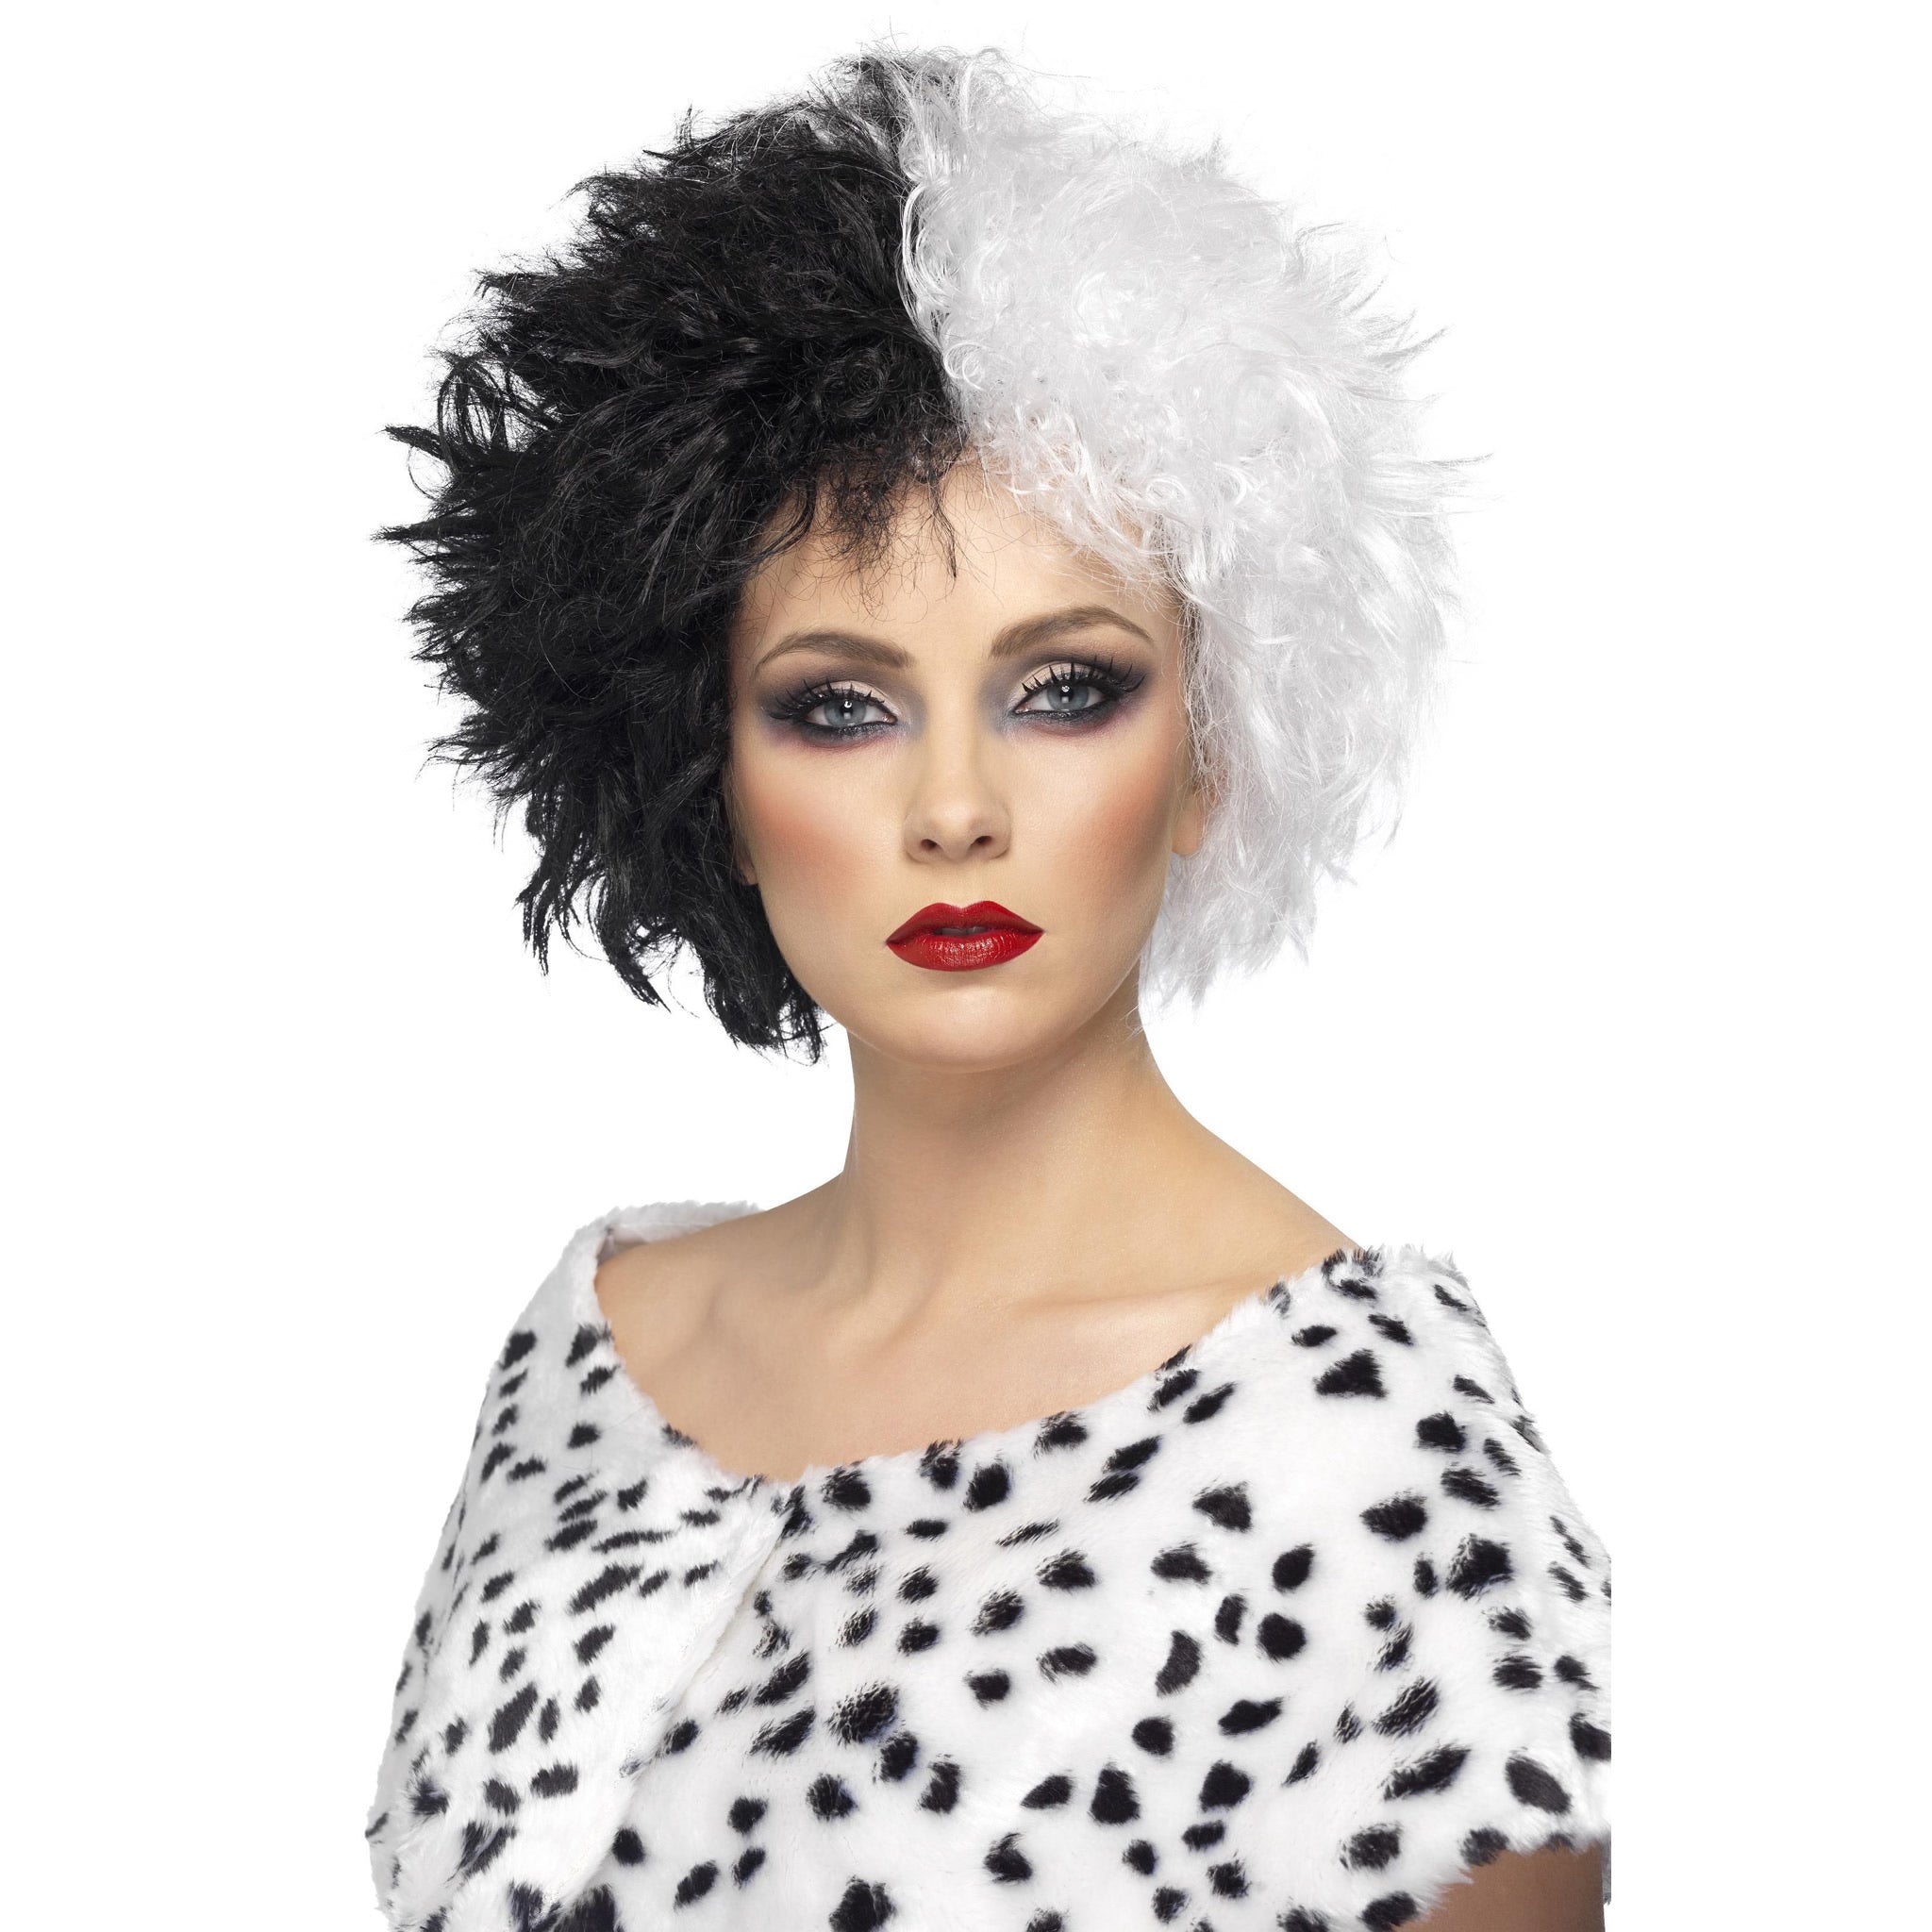 Black and white Cruella style wig